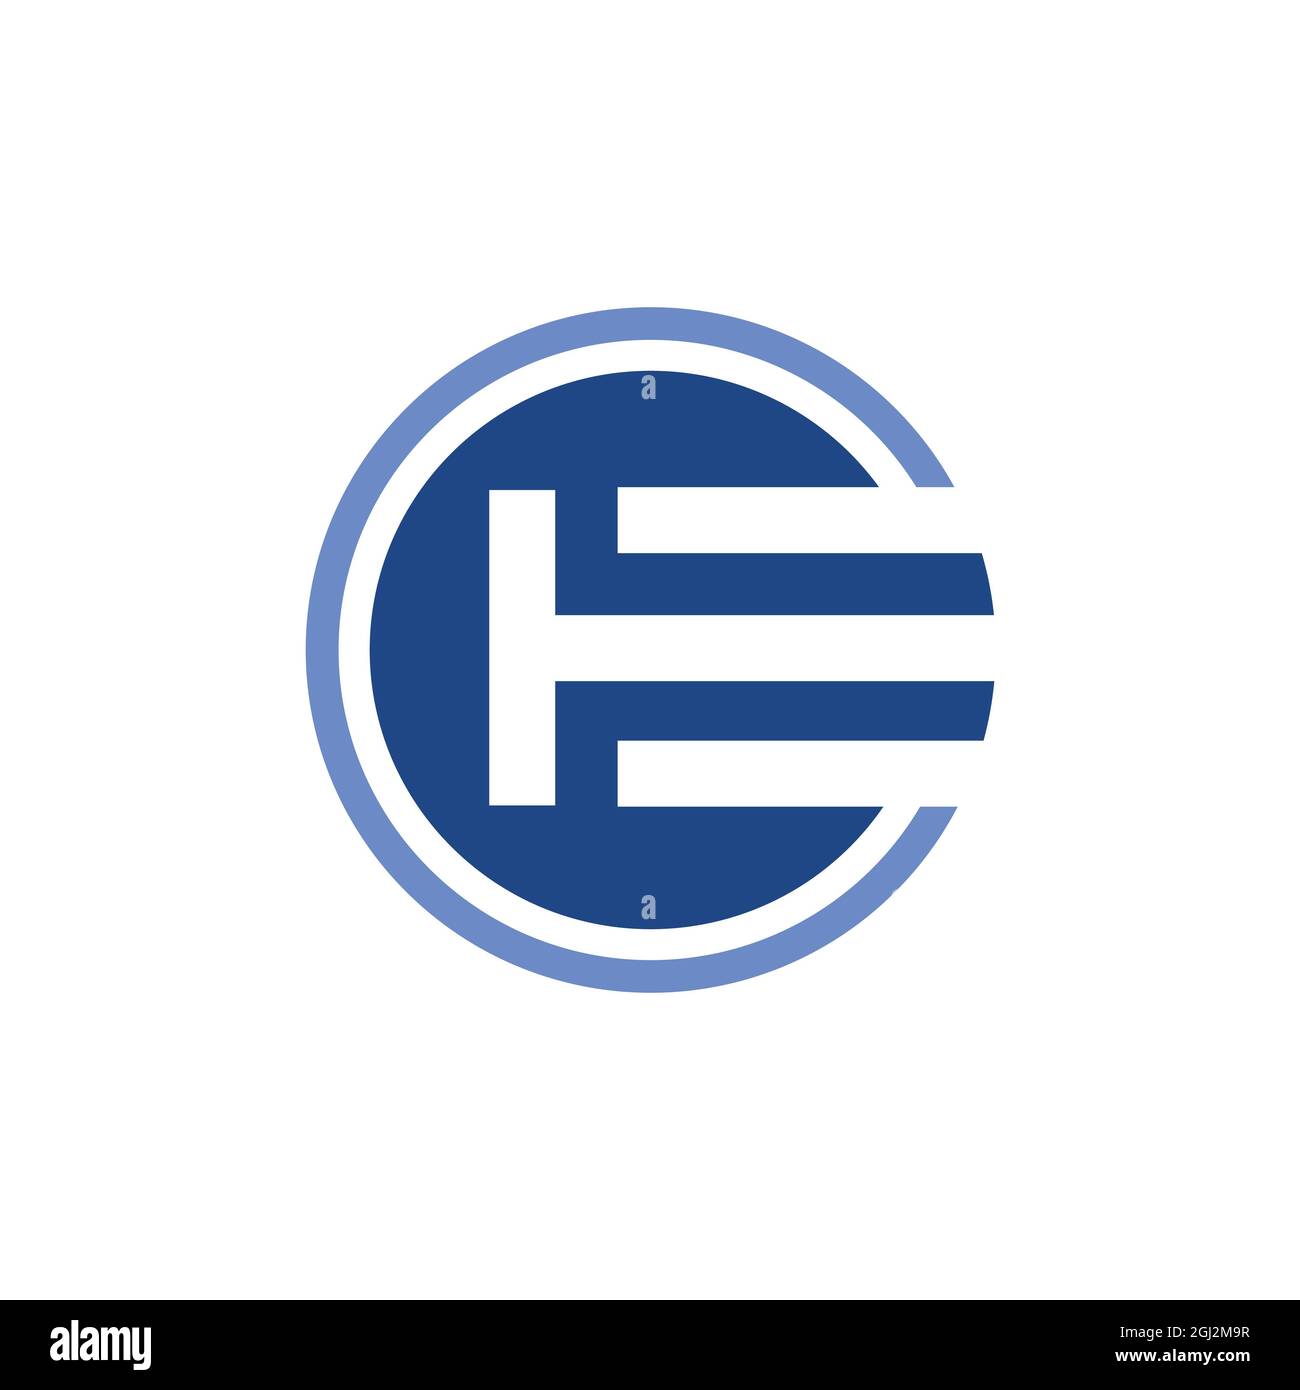 Abstrait lettre E logo icône plat vecteur concept graphique simple design élégant Illustration de Vecteur